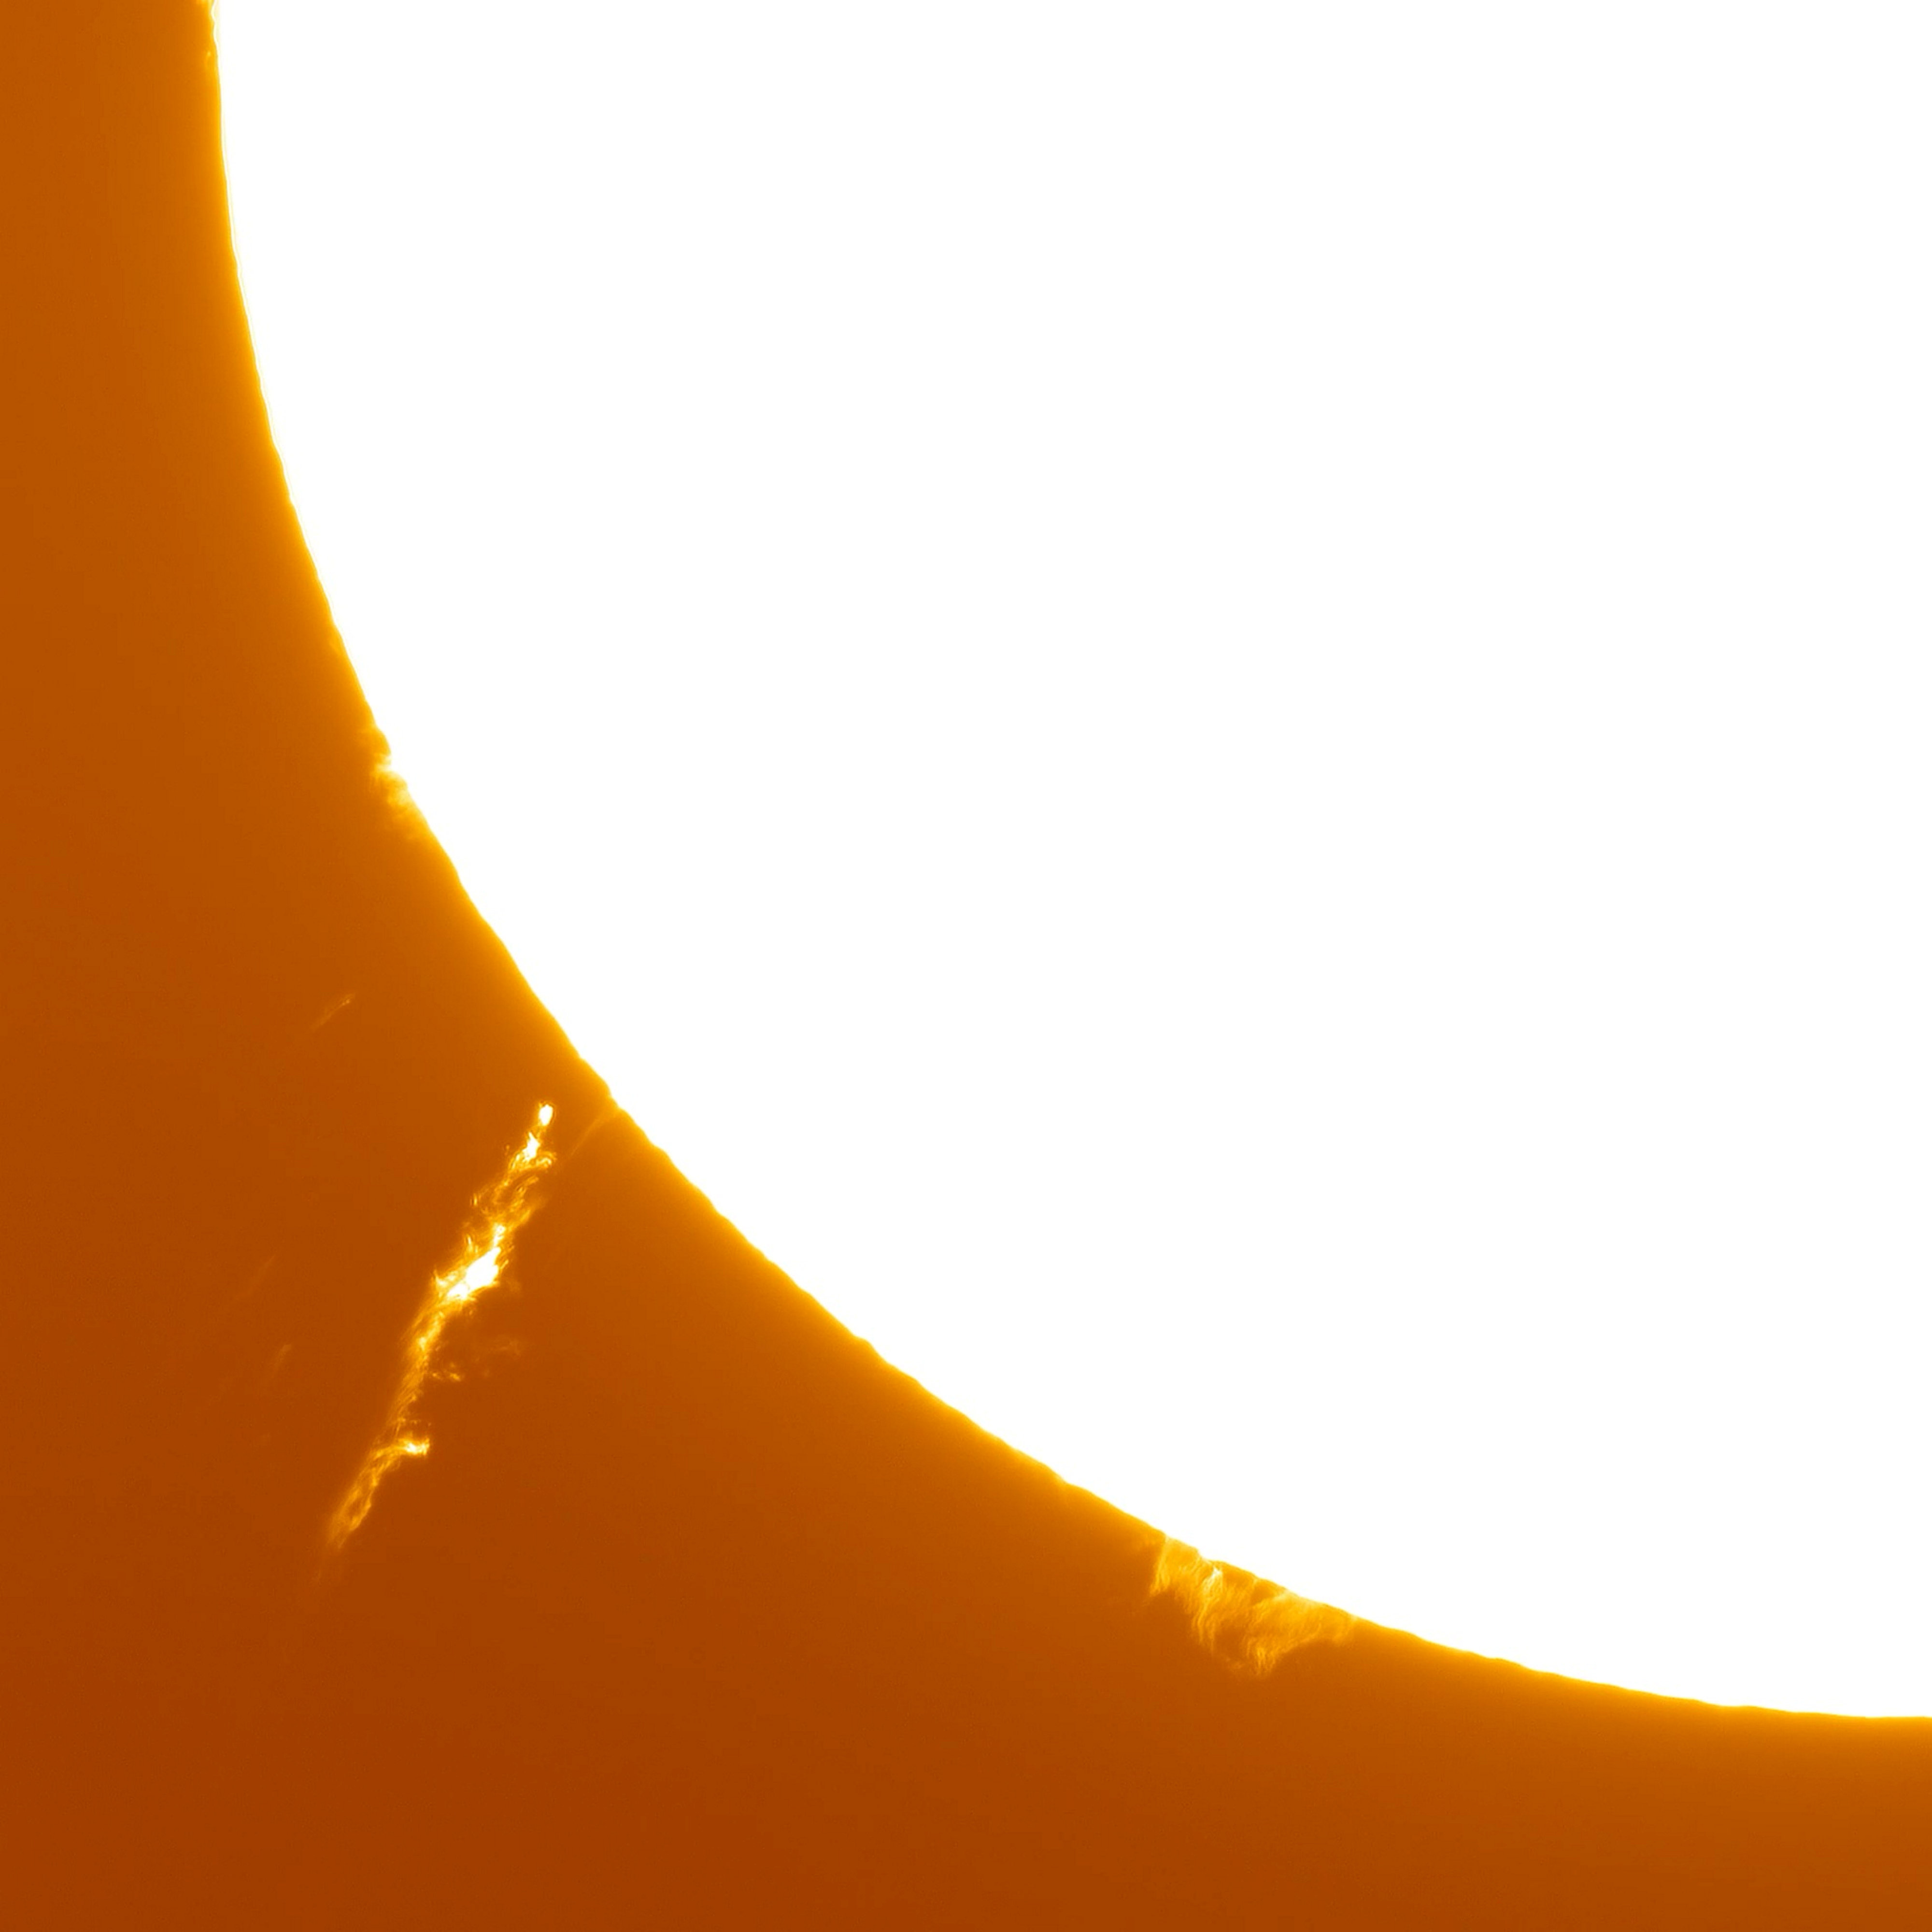 Die Oberfläche der Sonne hat eine Temperatur von 5600 Grad